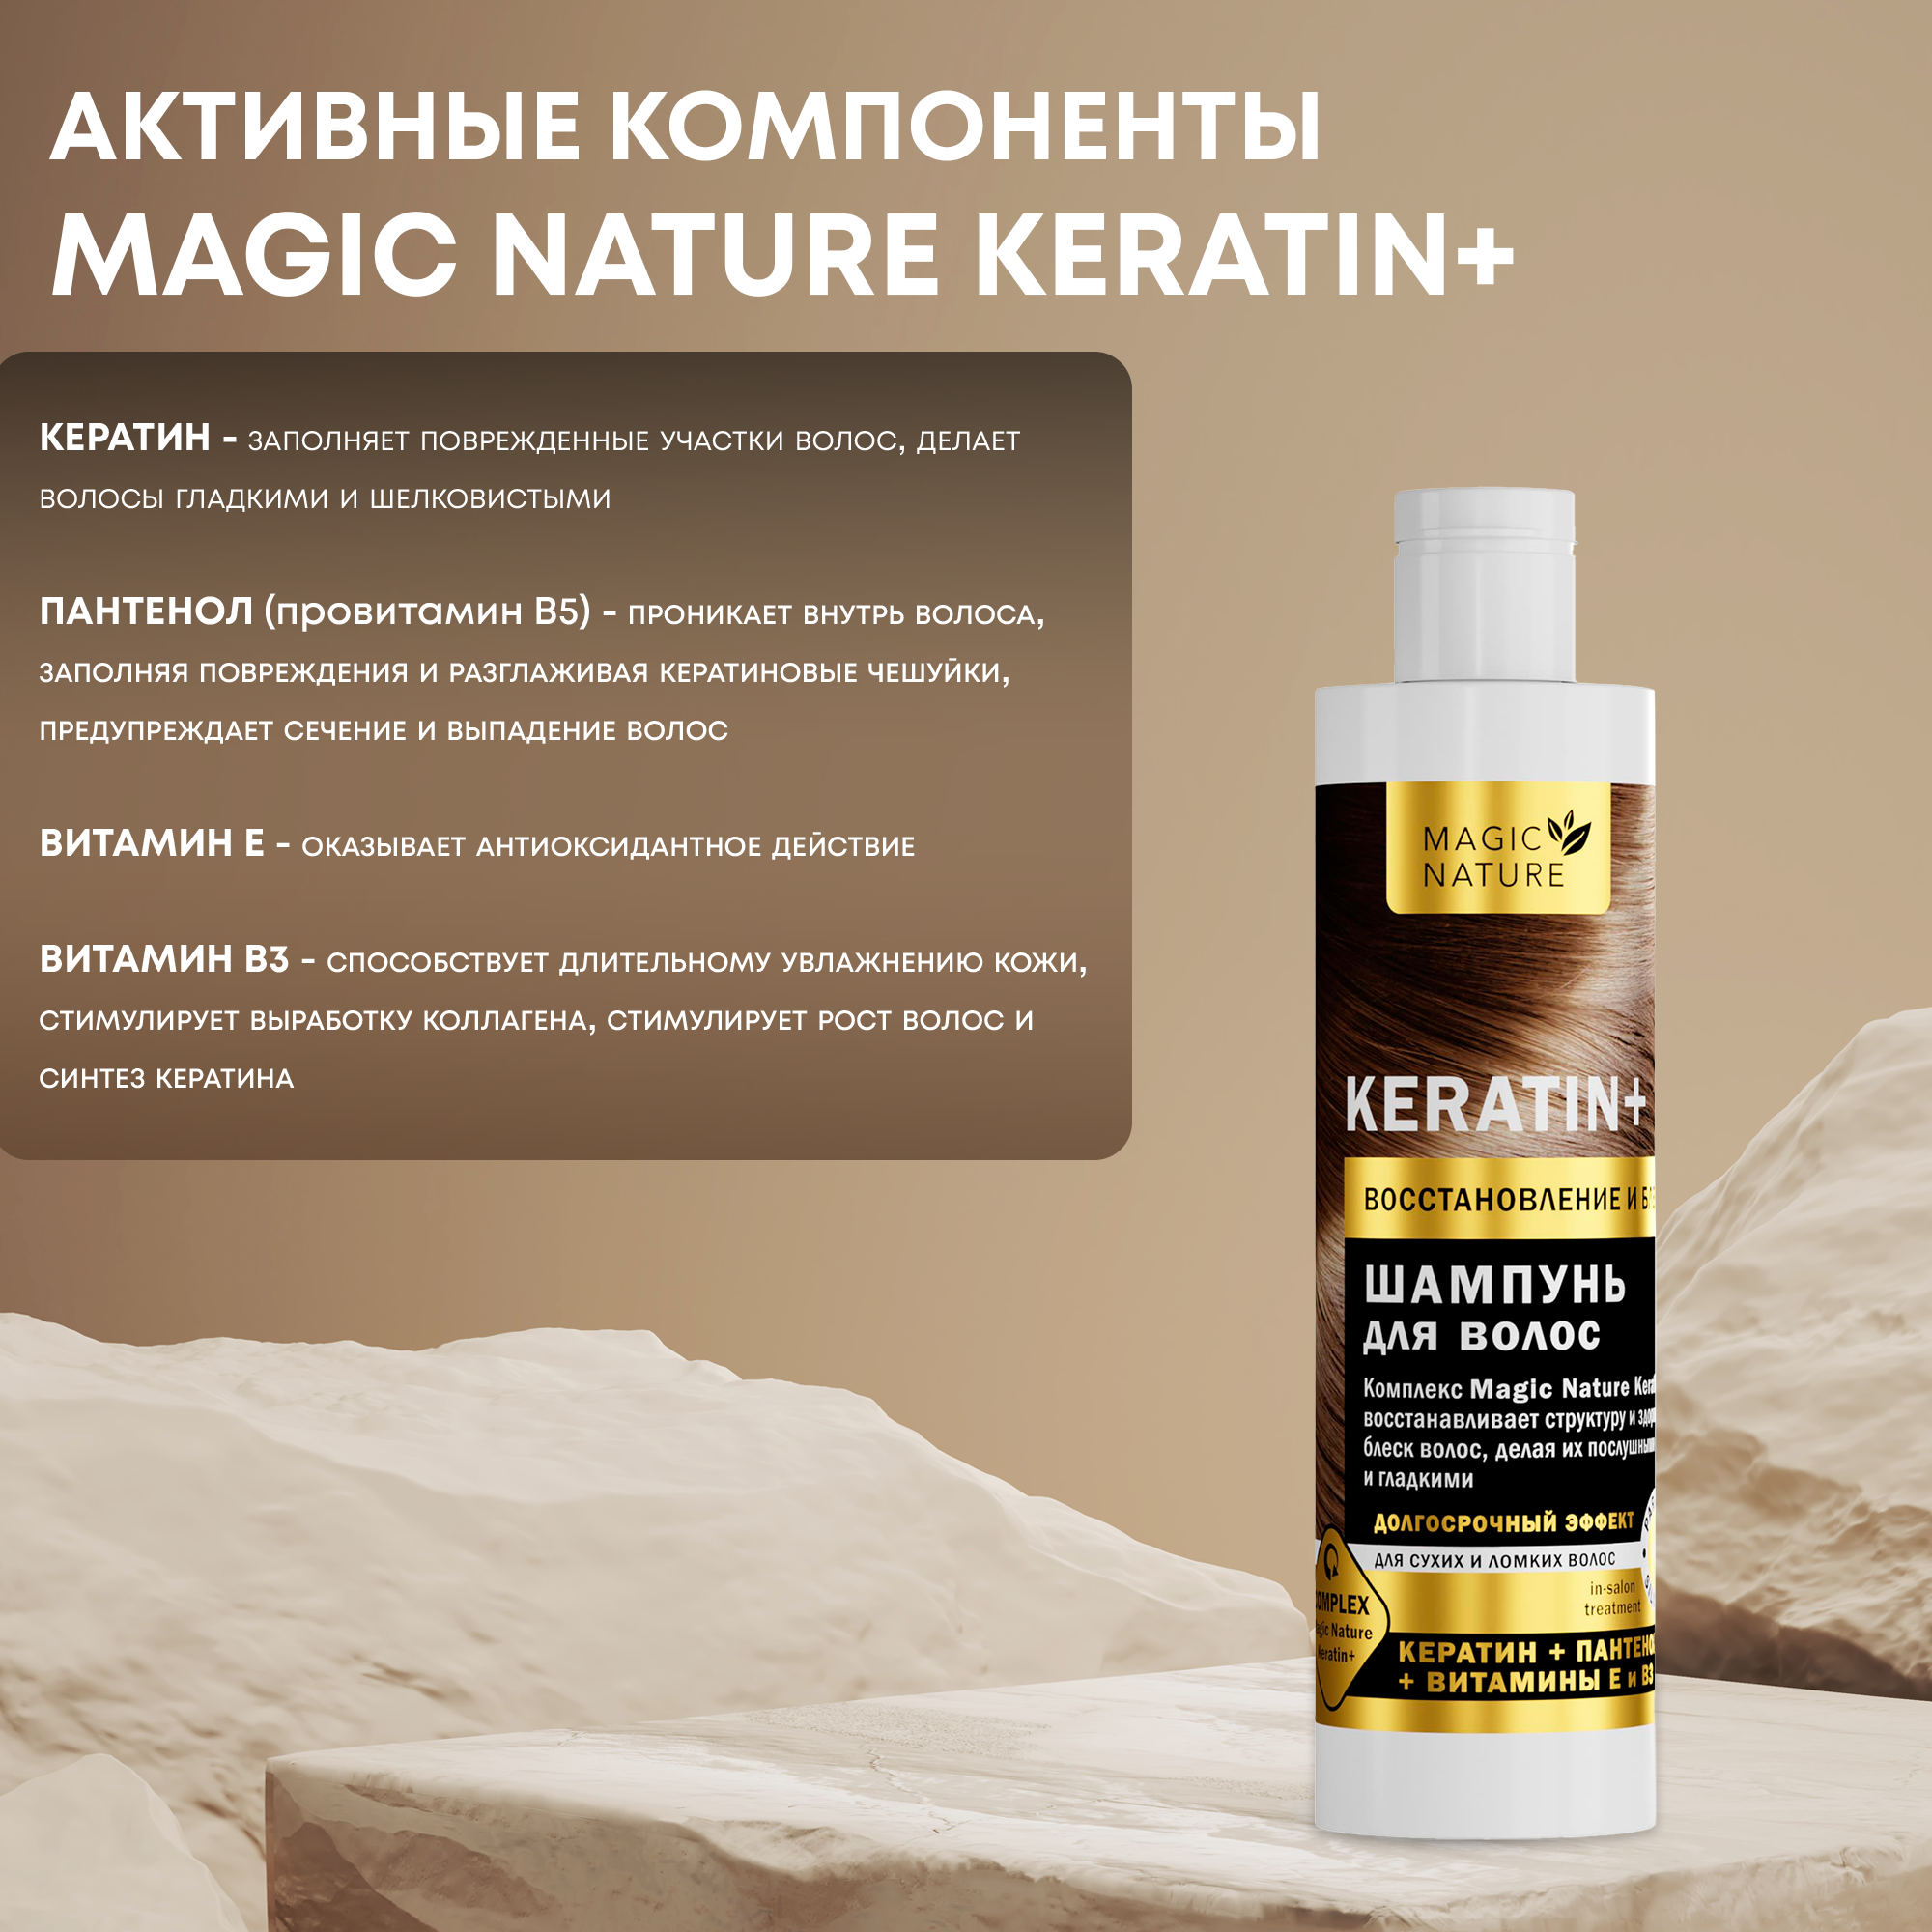 MAGIC NATURE Шампунь для волос KERATIN+ с кератином, восстановление и блеск, для роста волос, 250 мл.